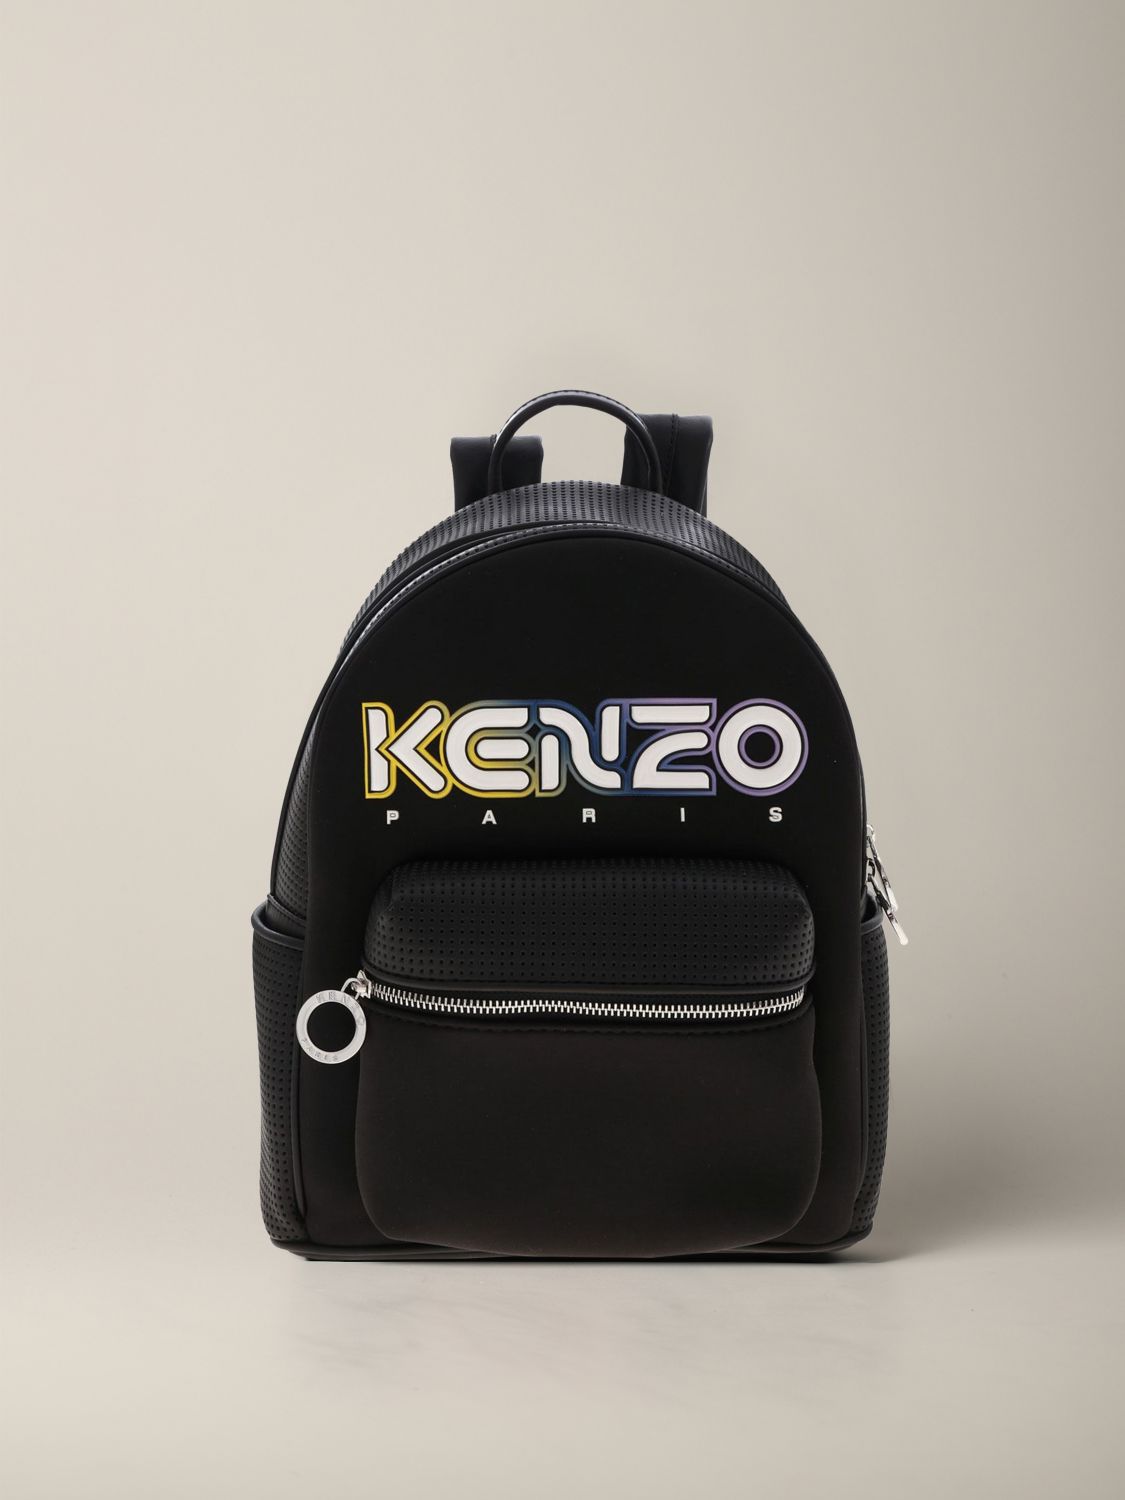 kenzo backpack leather